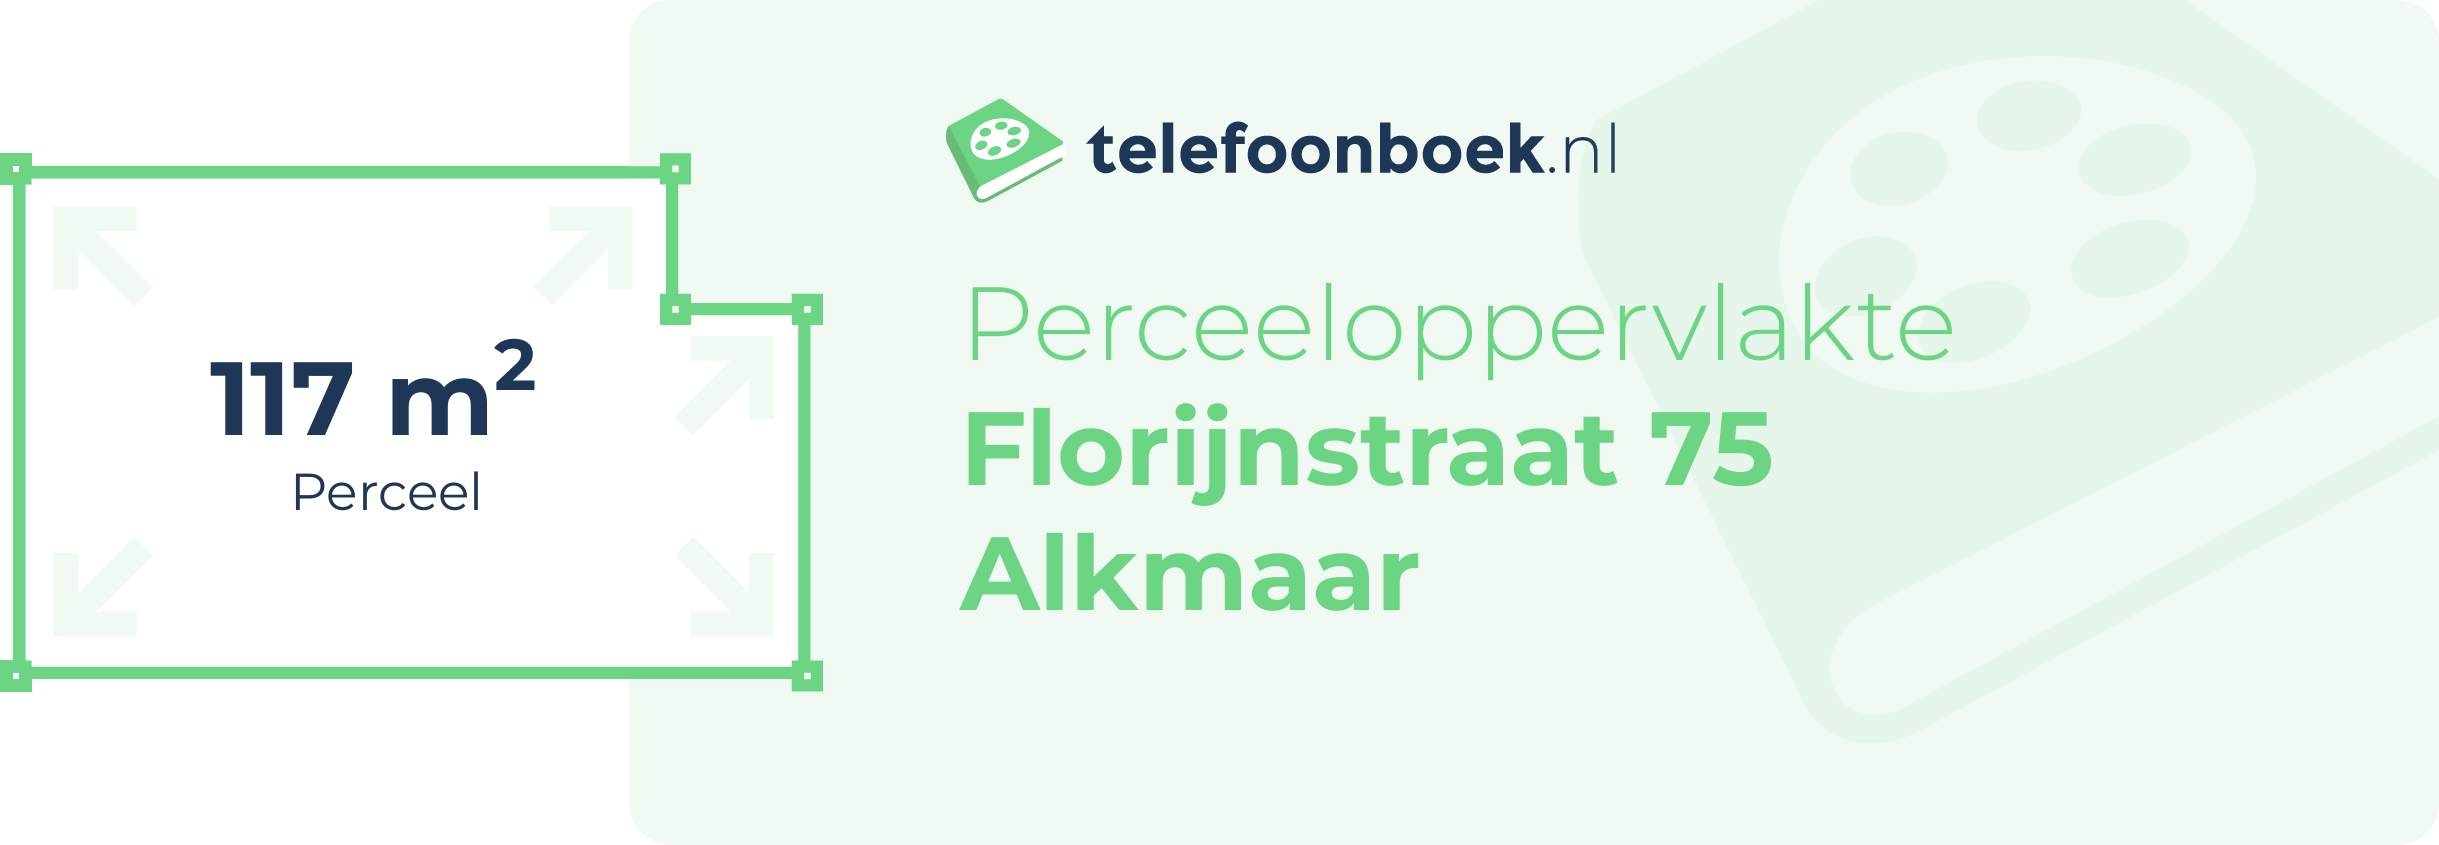 Perceeloppervlakte Florijnstraat 75 Alkmaar